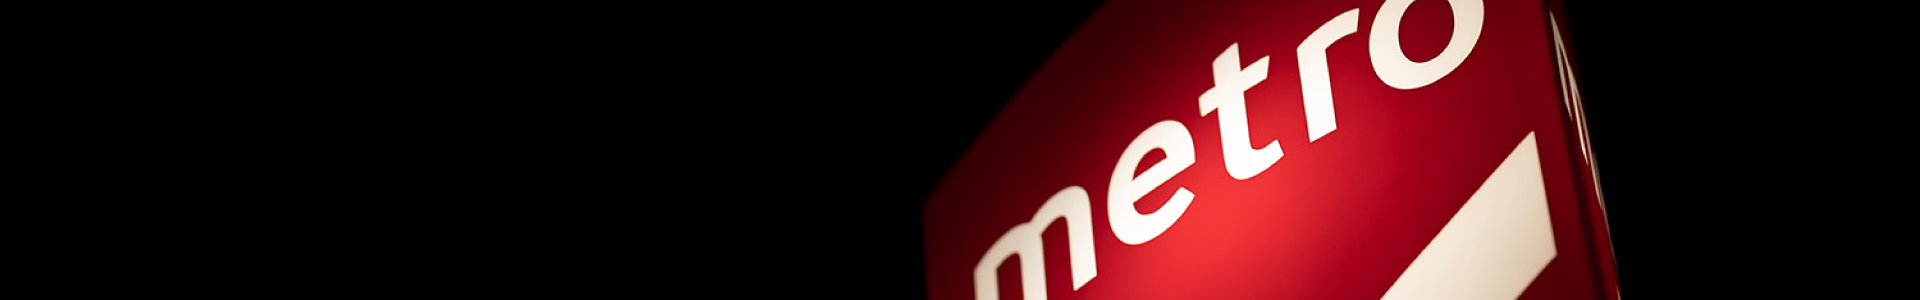 Banner da página - Imagem do logotipo do Metro